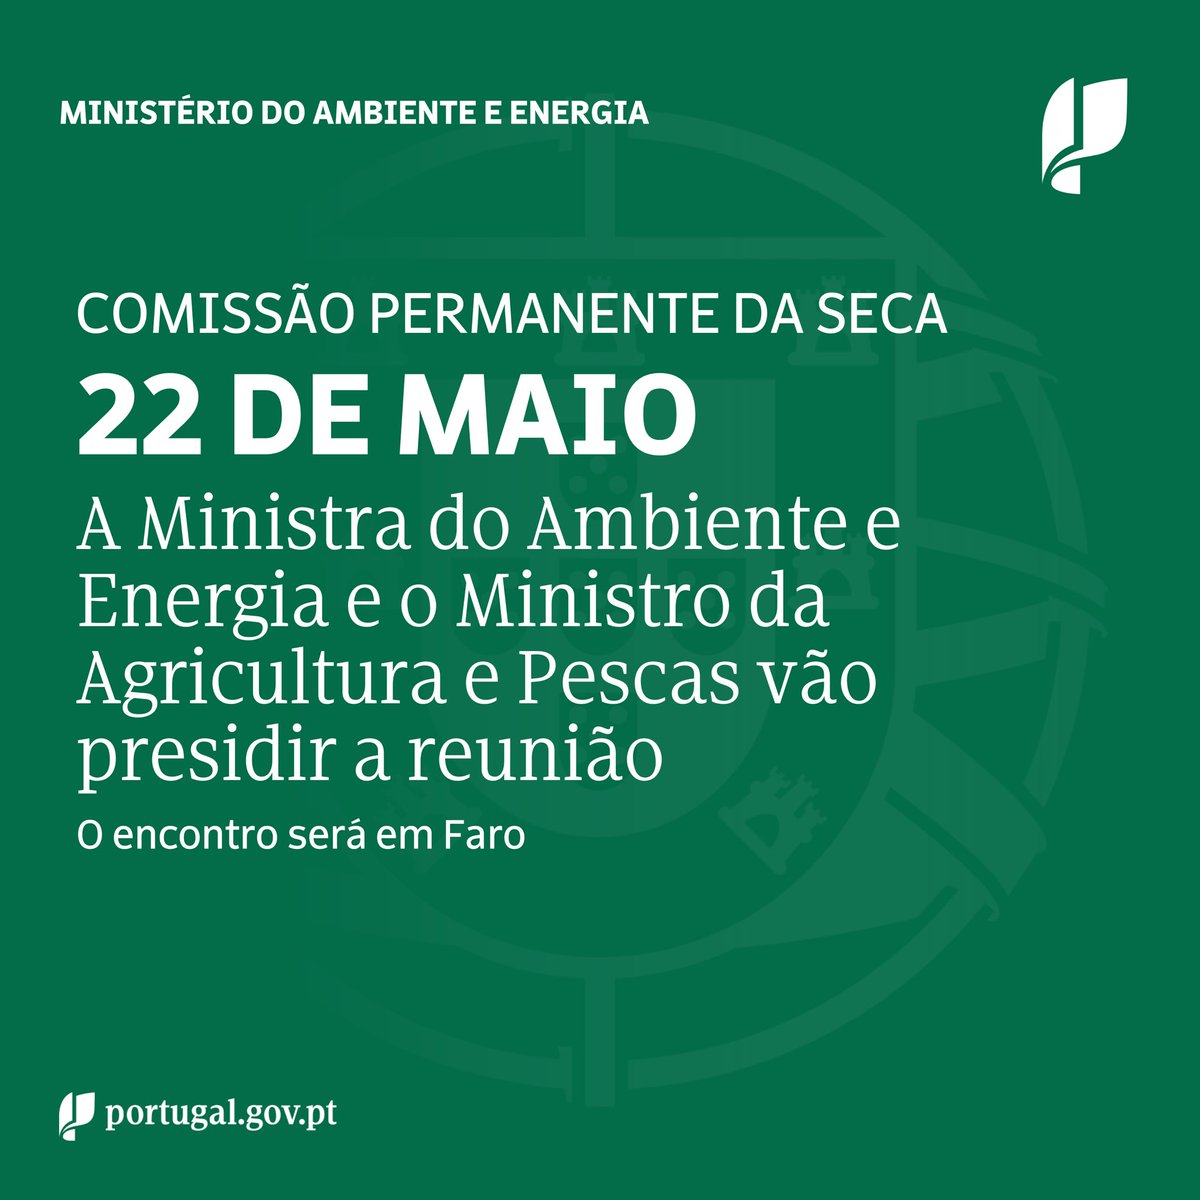 A Ministra do Ambiente e Energia, @mgracacarvalho, e o Ministro da Agricultura e Pesca, @JMFernandesEU, vão presidir a reunião da Comissão Permanente da Seca que se irá realizar no dia 22 de maio, em Faro.